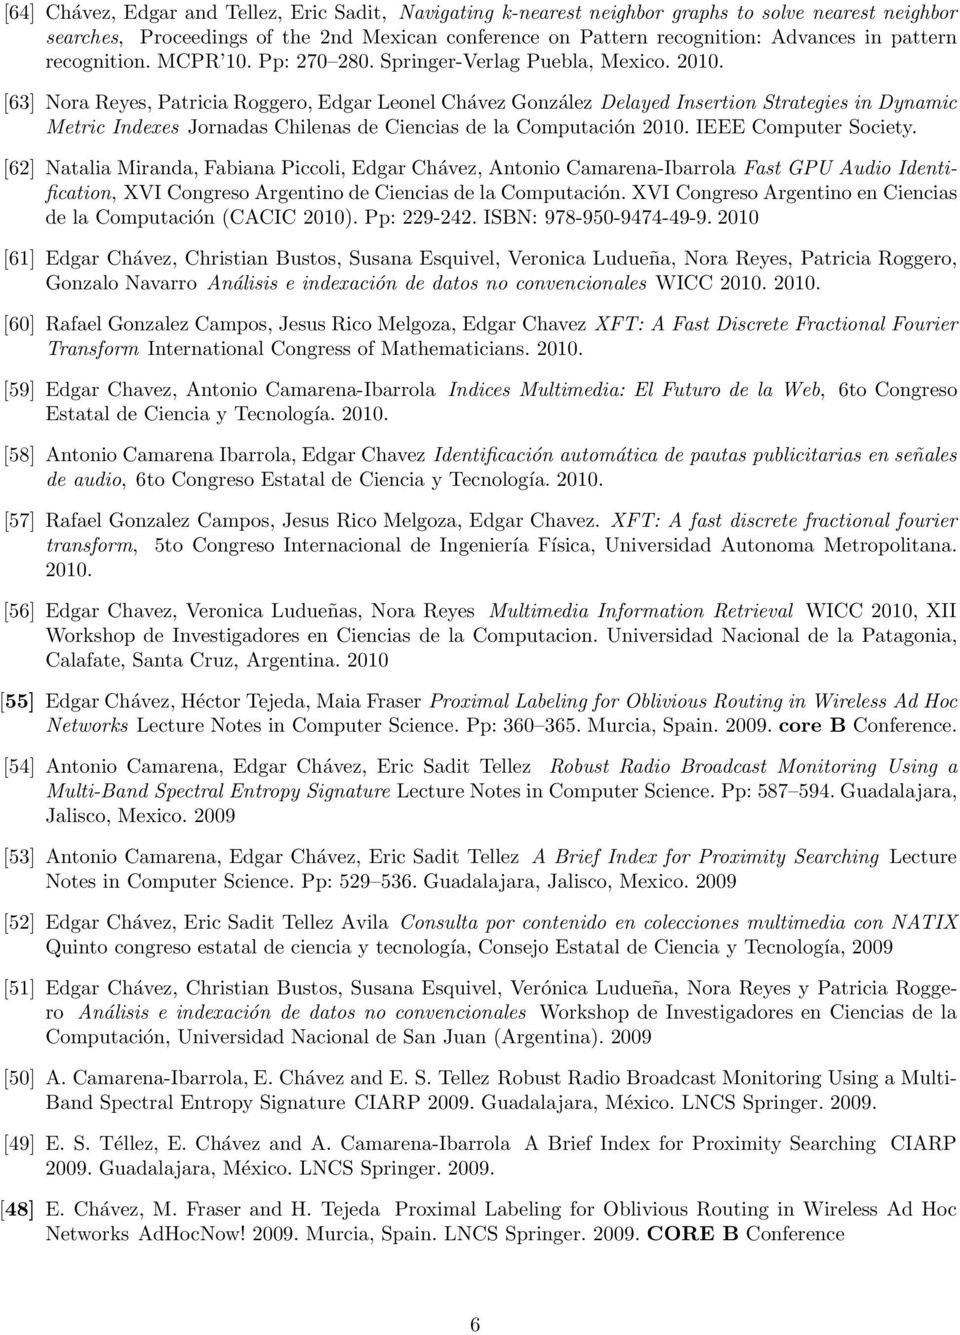 [63] Nora Reyes, Patricia Roggero, Edgar Leonel Chávez González Delayed Insertion Strategies in Dynamic Metric Indexes Jornadas Chilenas de Ciencias de la Computación 2010. IEEE Computer Society.